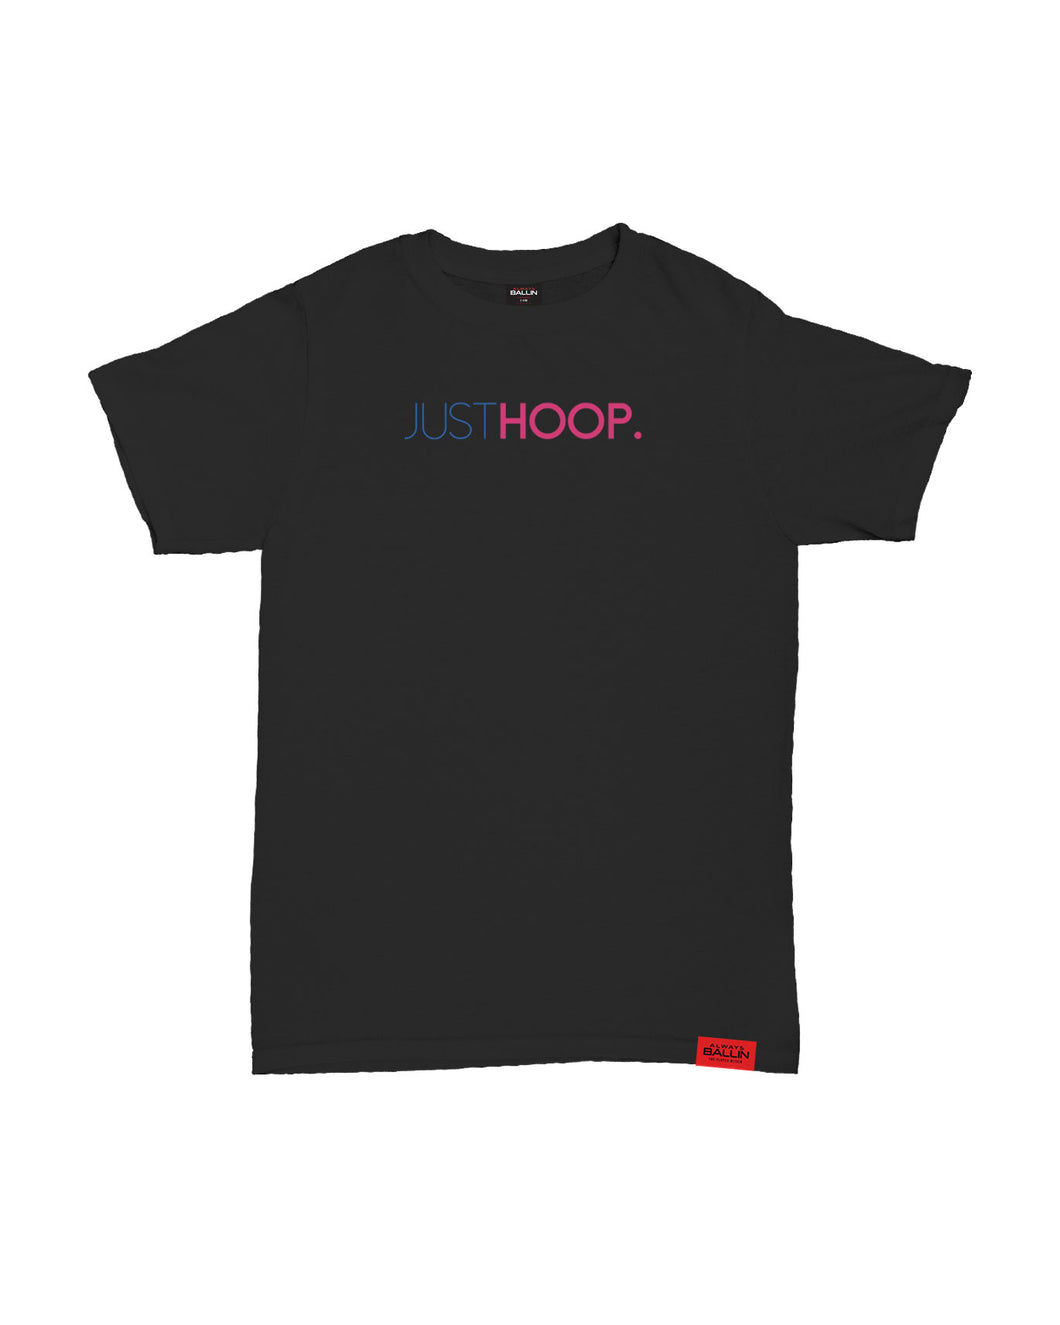 Just Hoop Kids Black T-Shirt